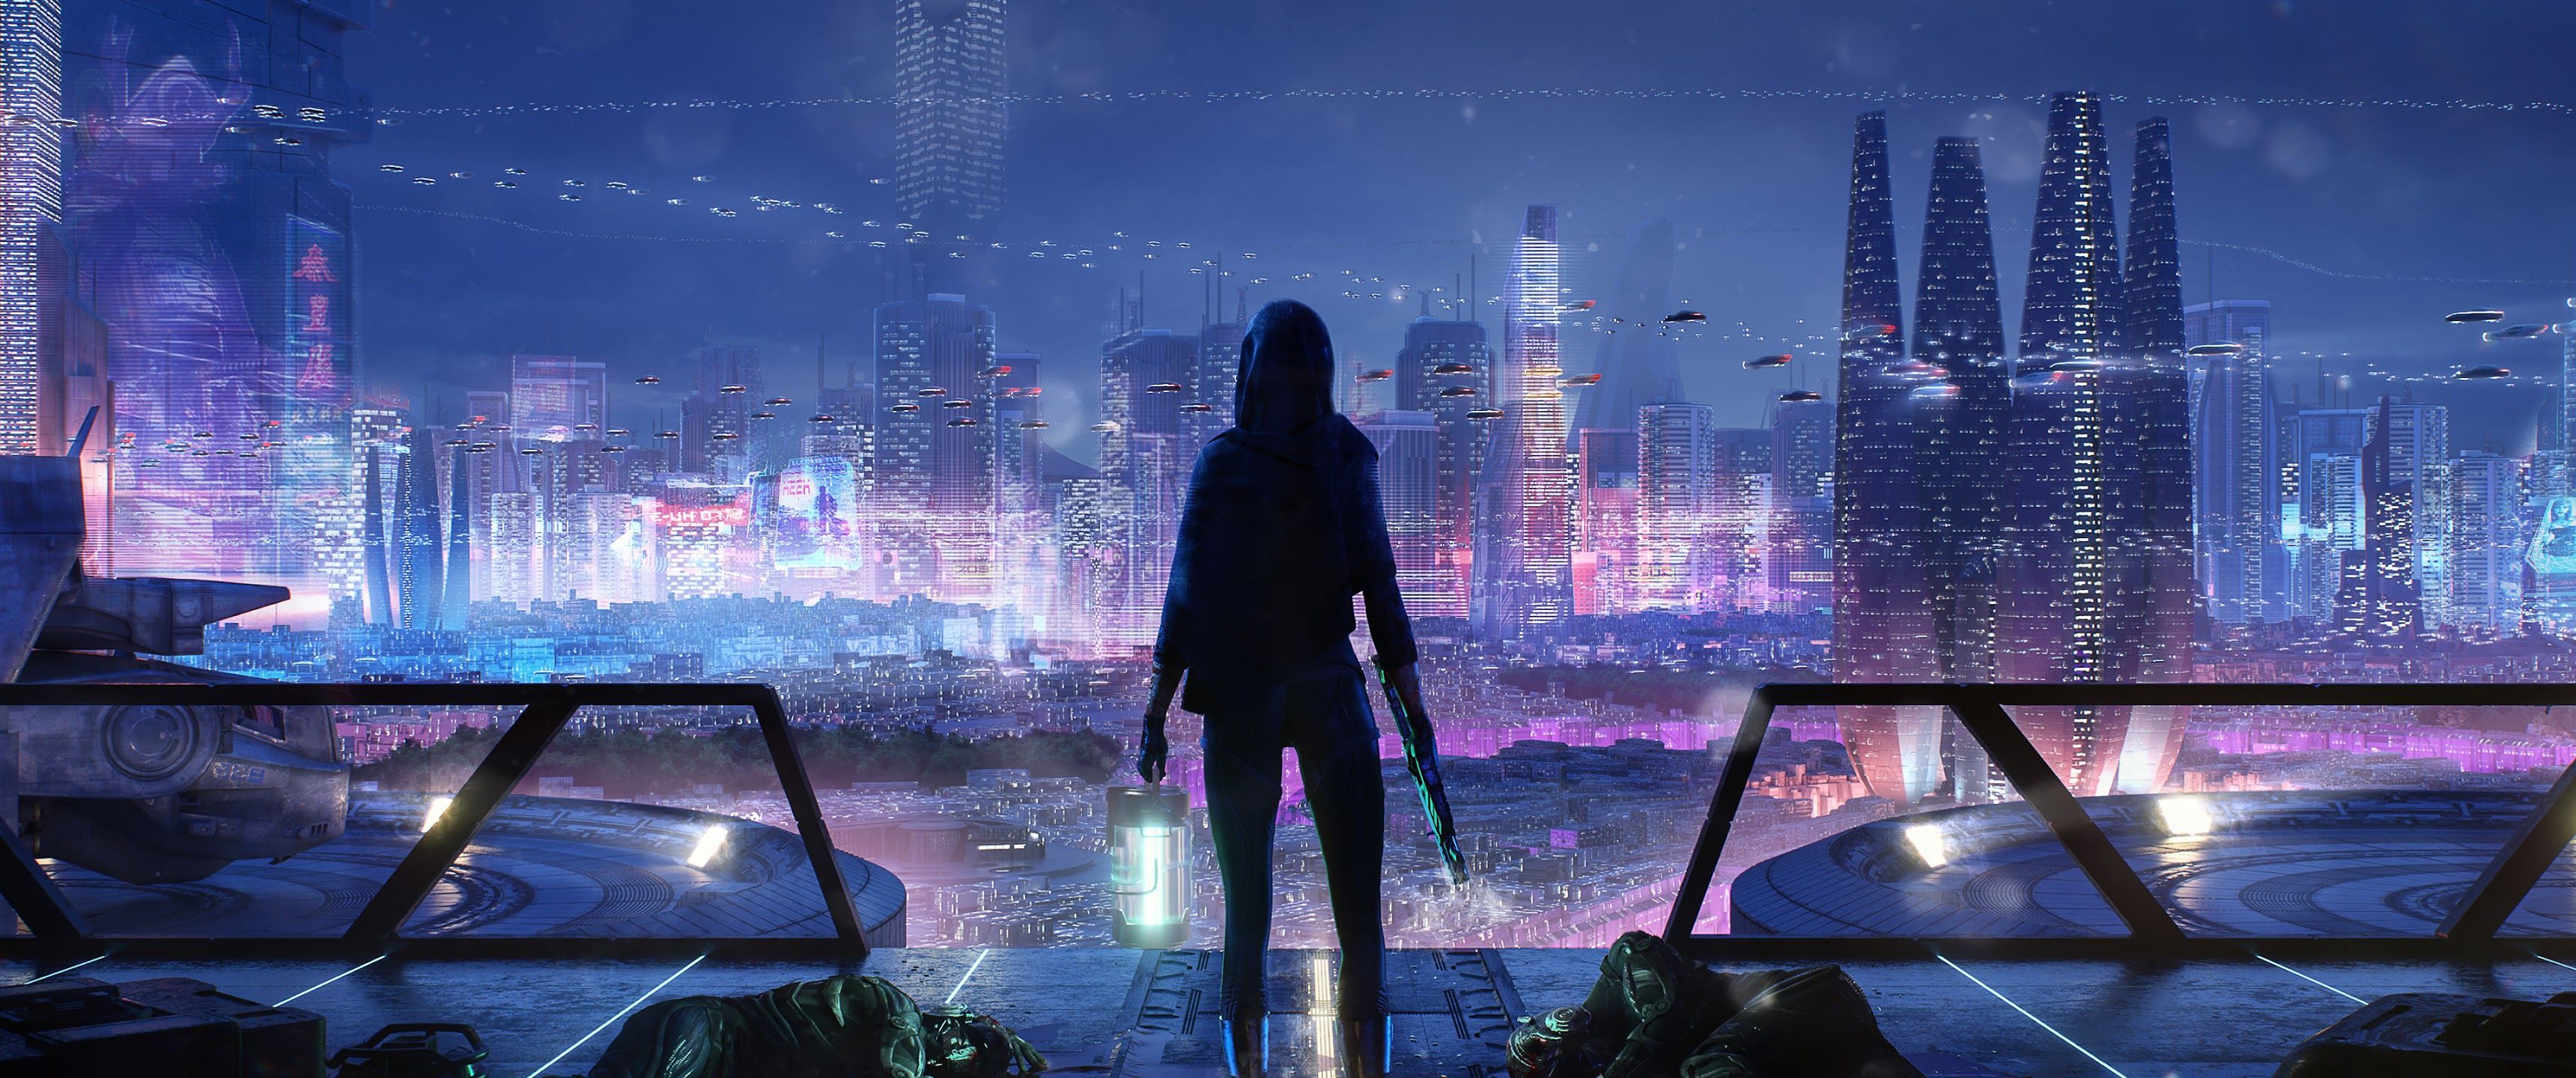 Sci Fi Night City Cityscape 4K Wallpaper